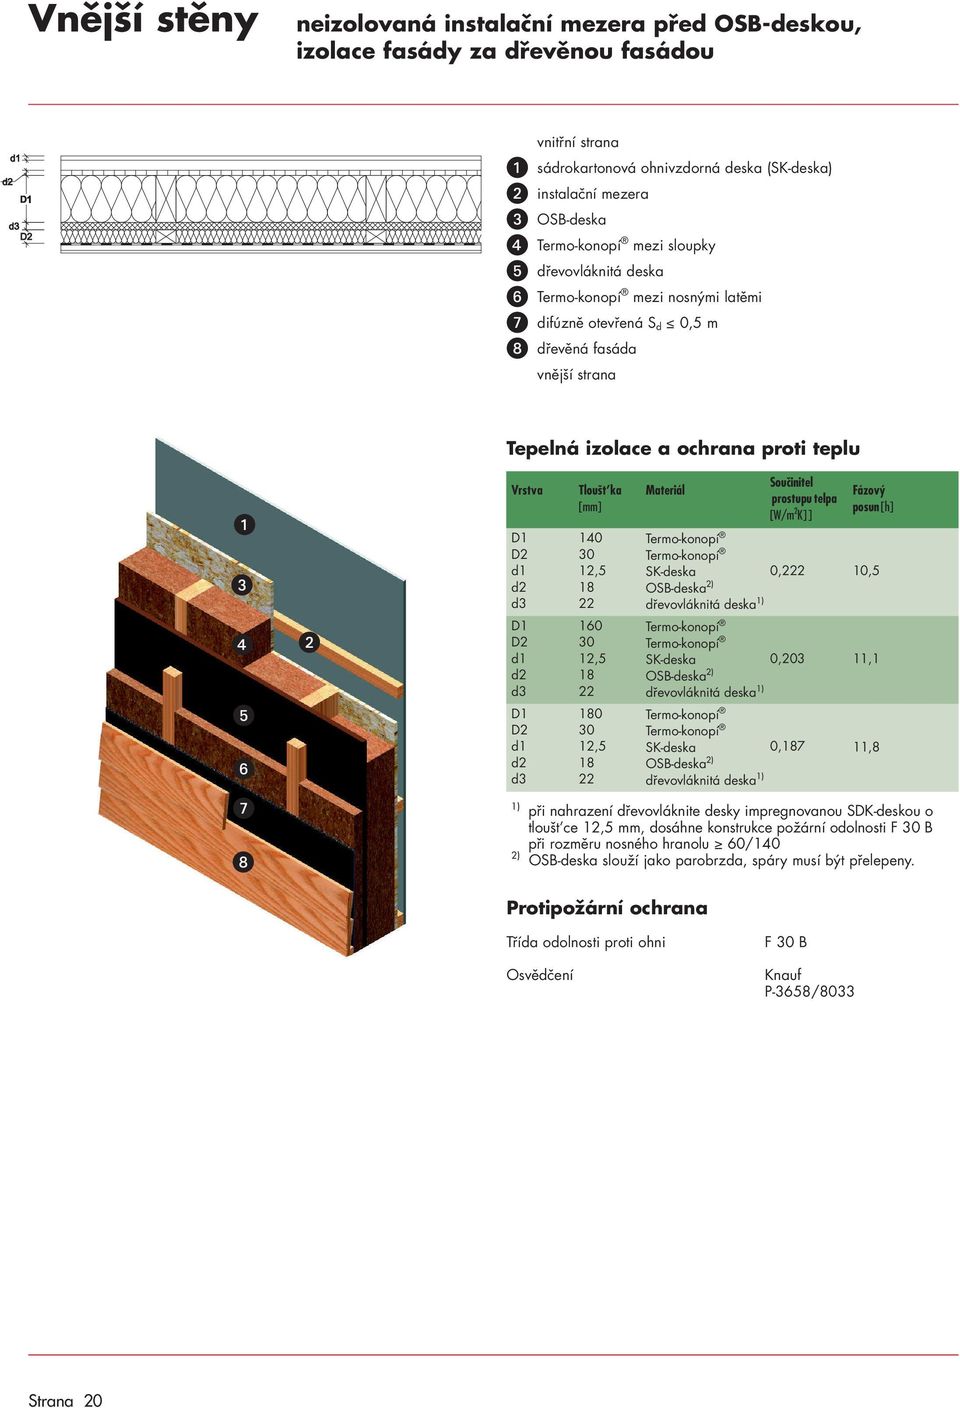 dřevovláknite desky impregnovanou SDK deskou o tloušt ce mm, dosáhne konstrukce požární odolnosti F B při rozměru nosného hranolu / OSB deska